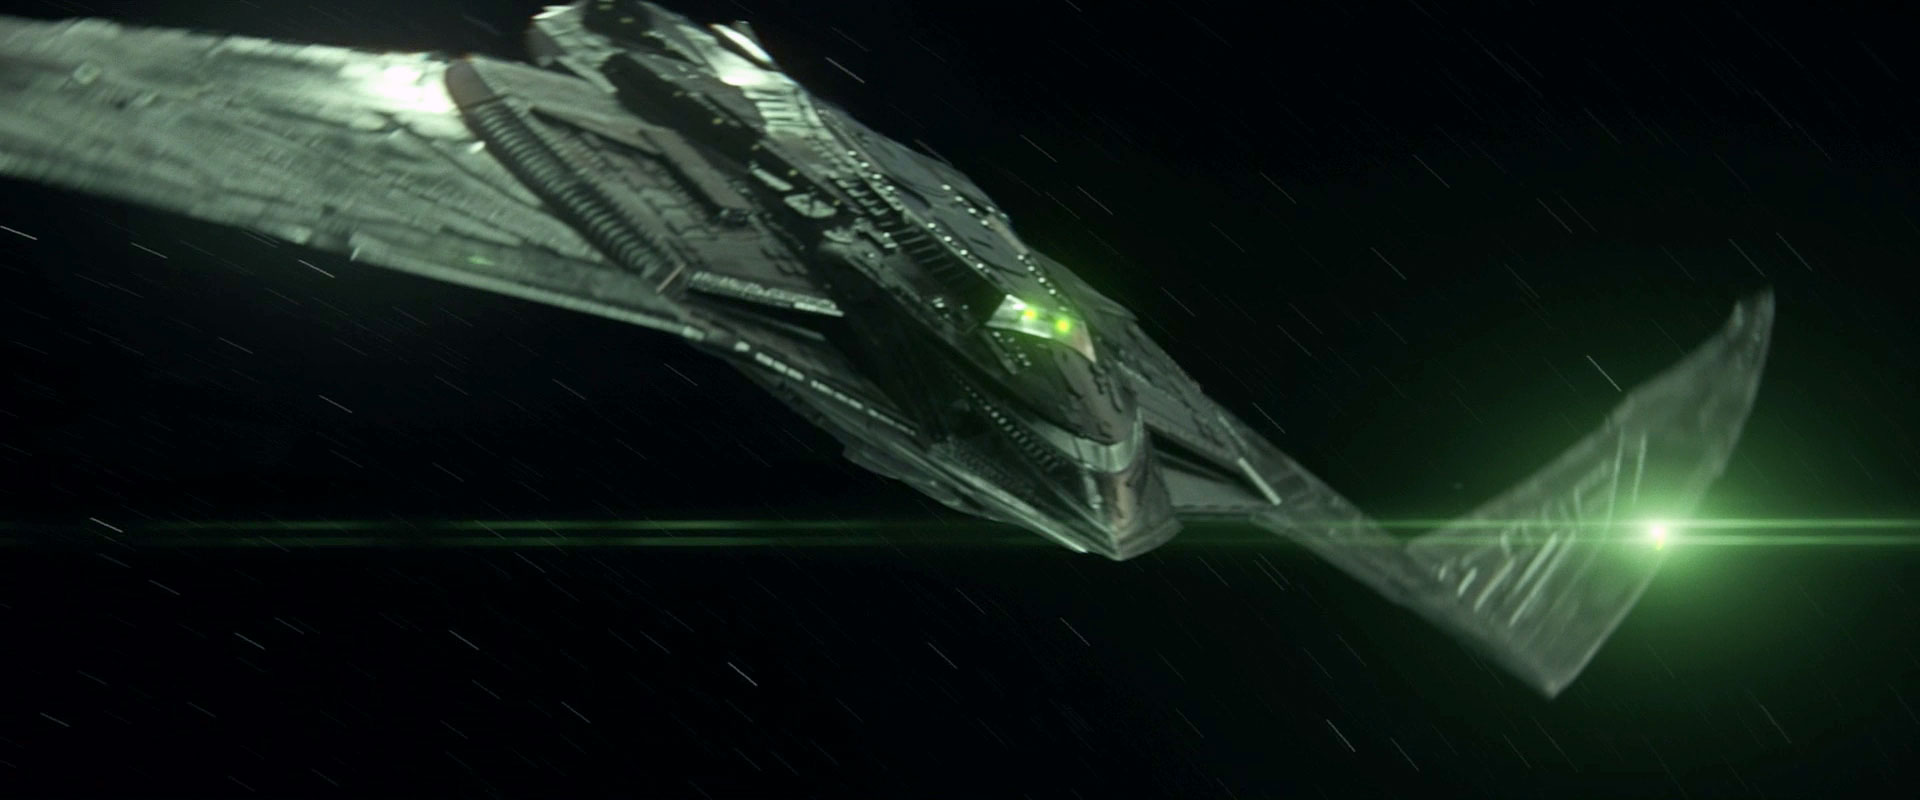 romulan ships star trek fleet command